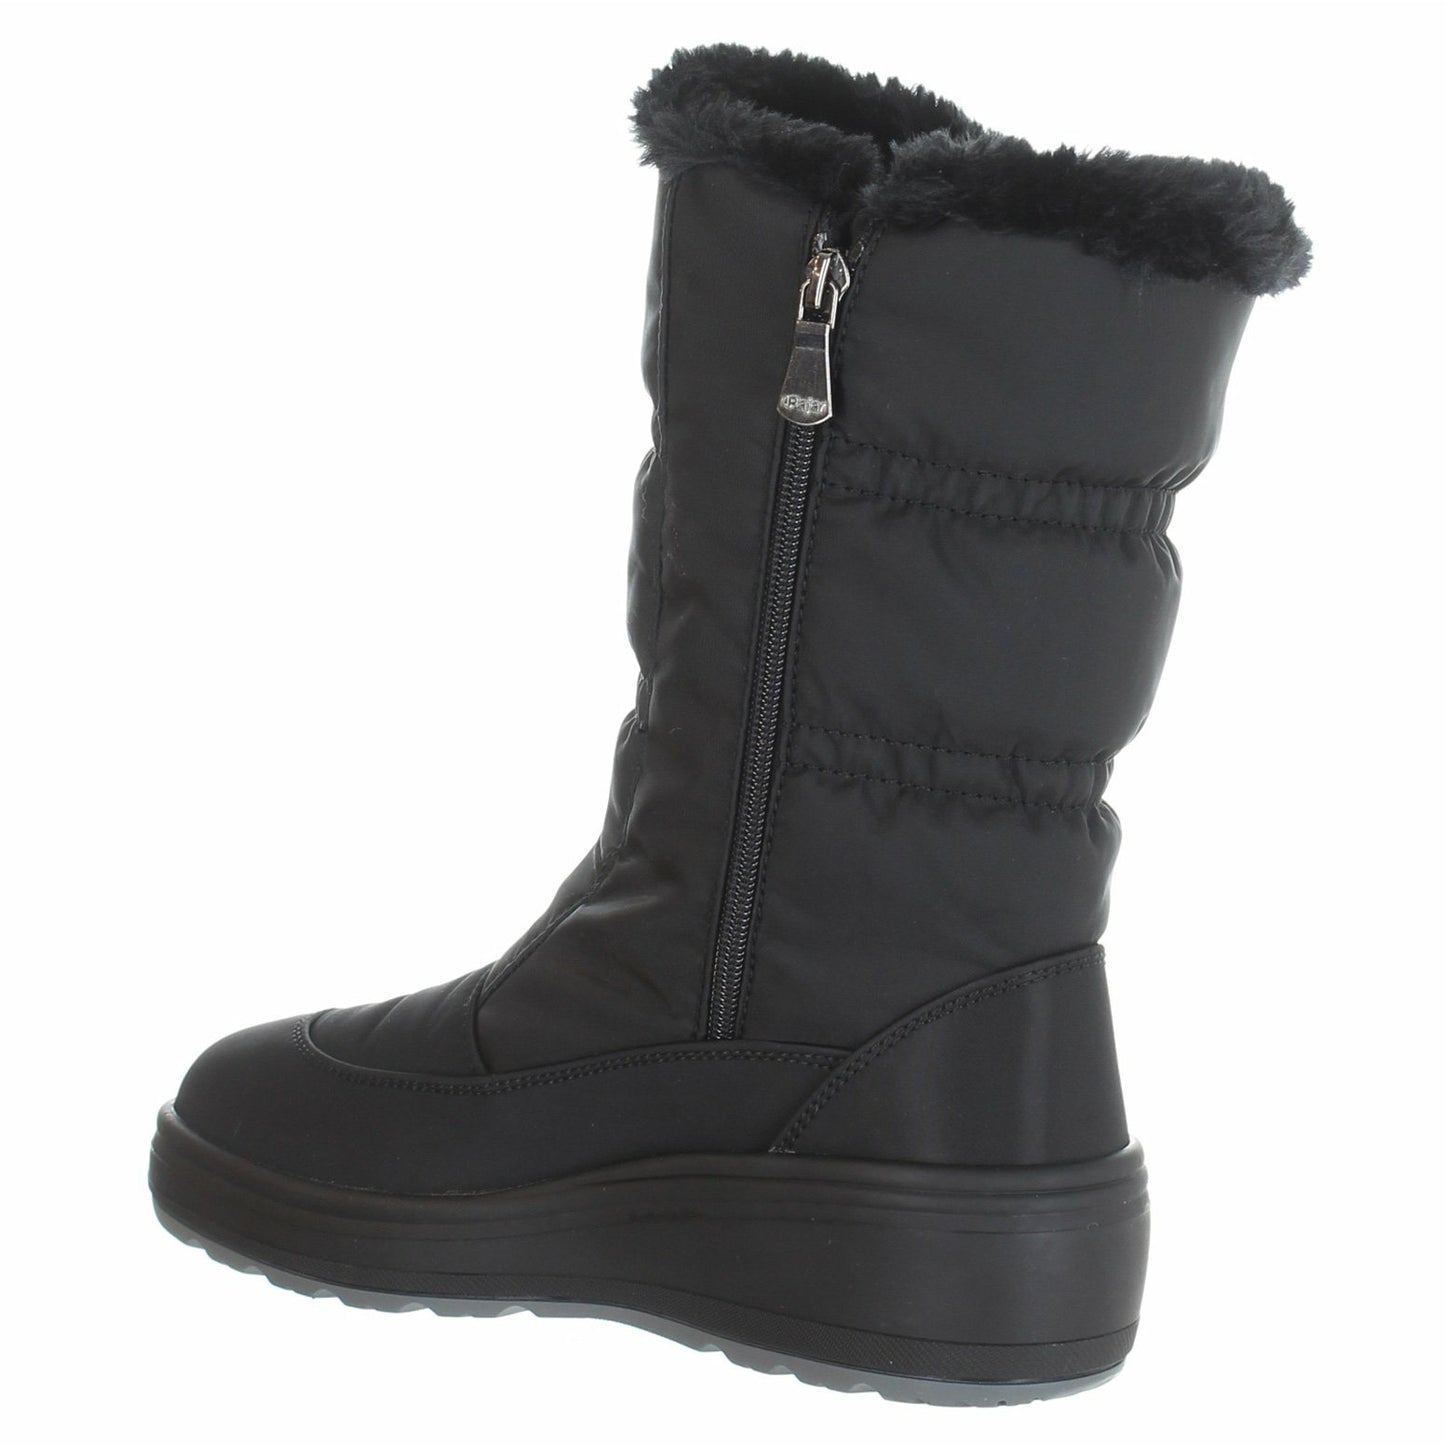 SNOWCAP-2 Women's Winter Boots